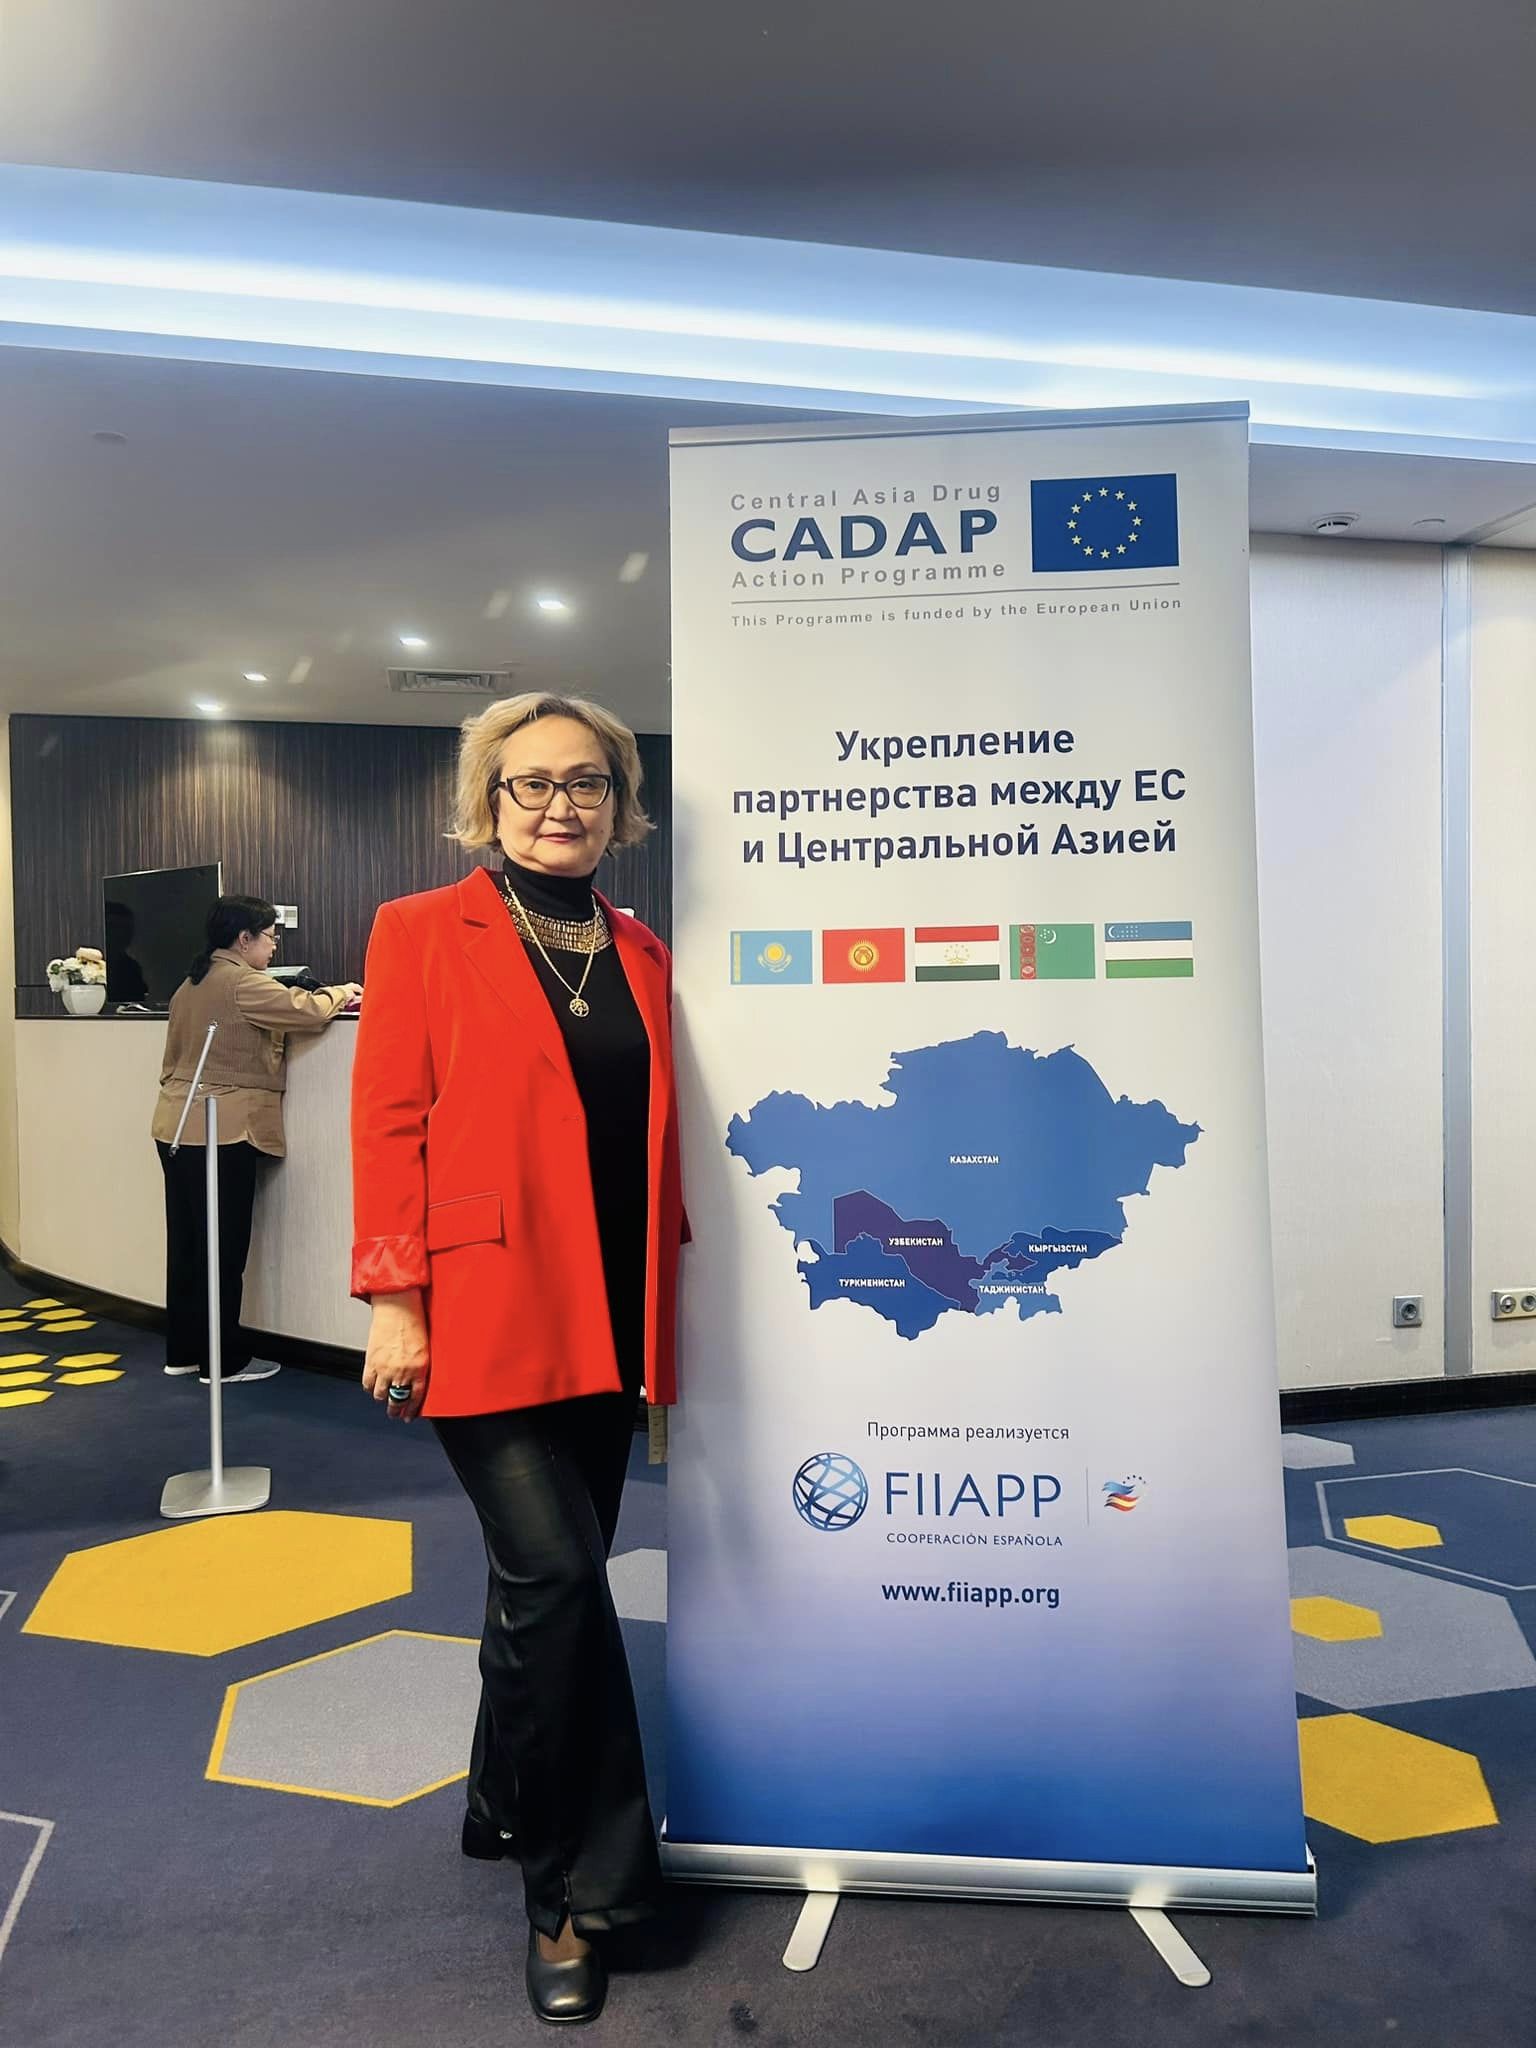 Семинар, организованный CADAP (Central Asia Drug Action Programme) 